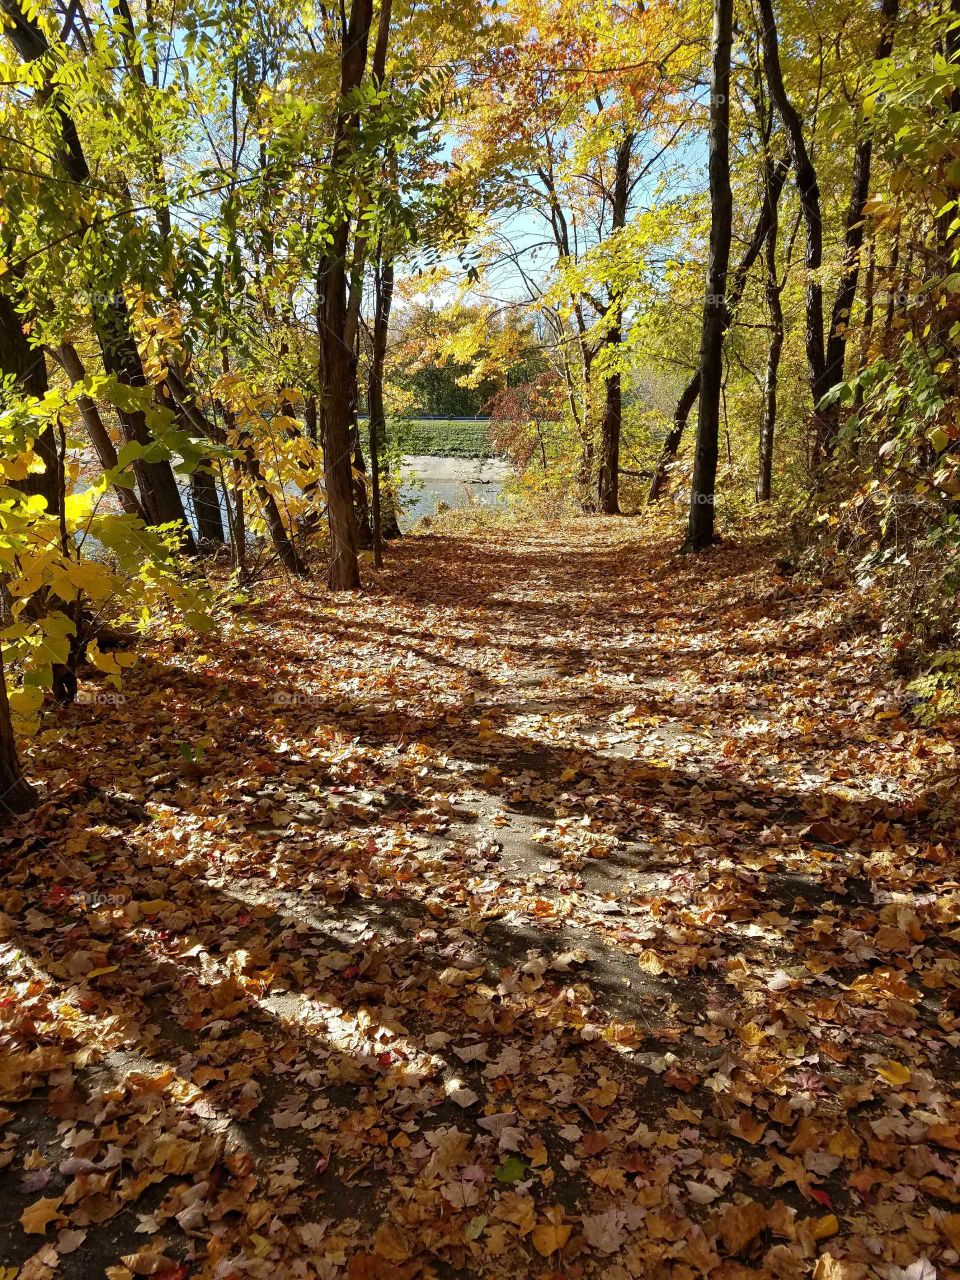 Through the path of autumn